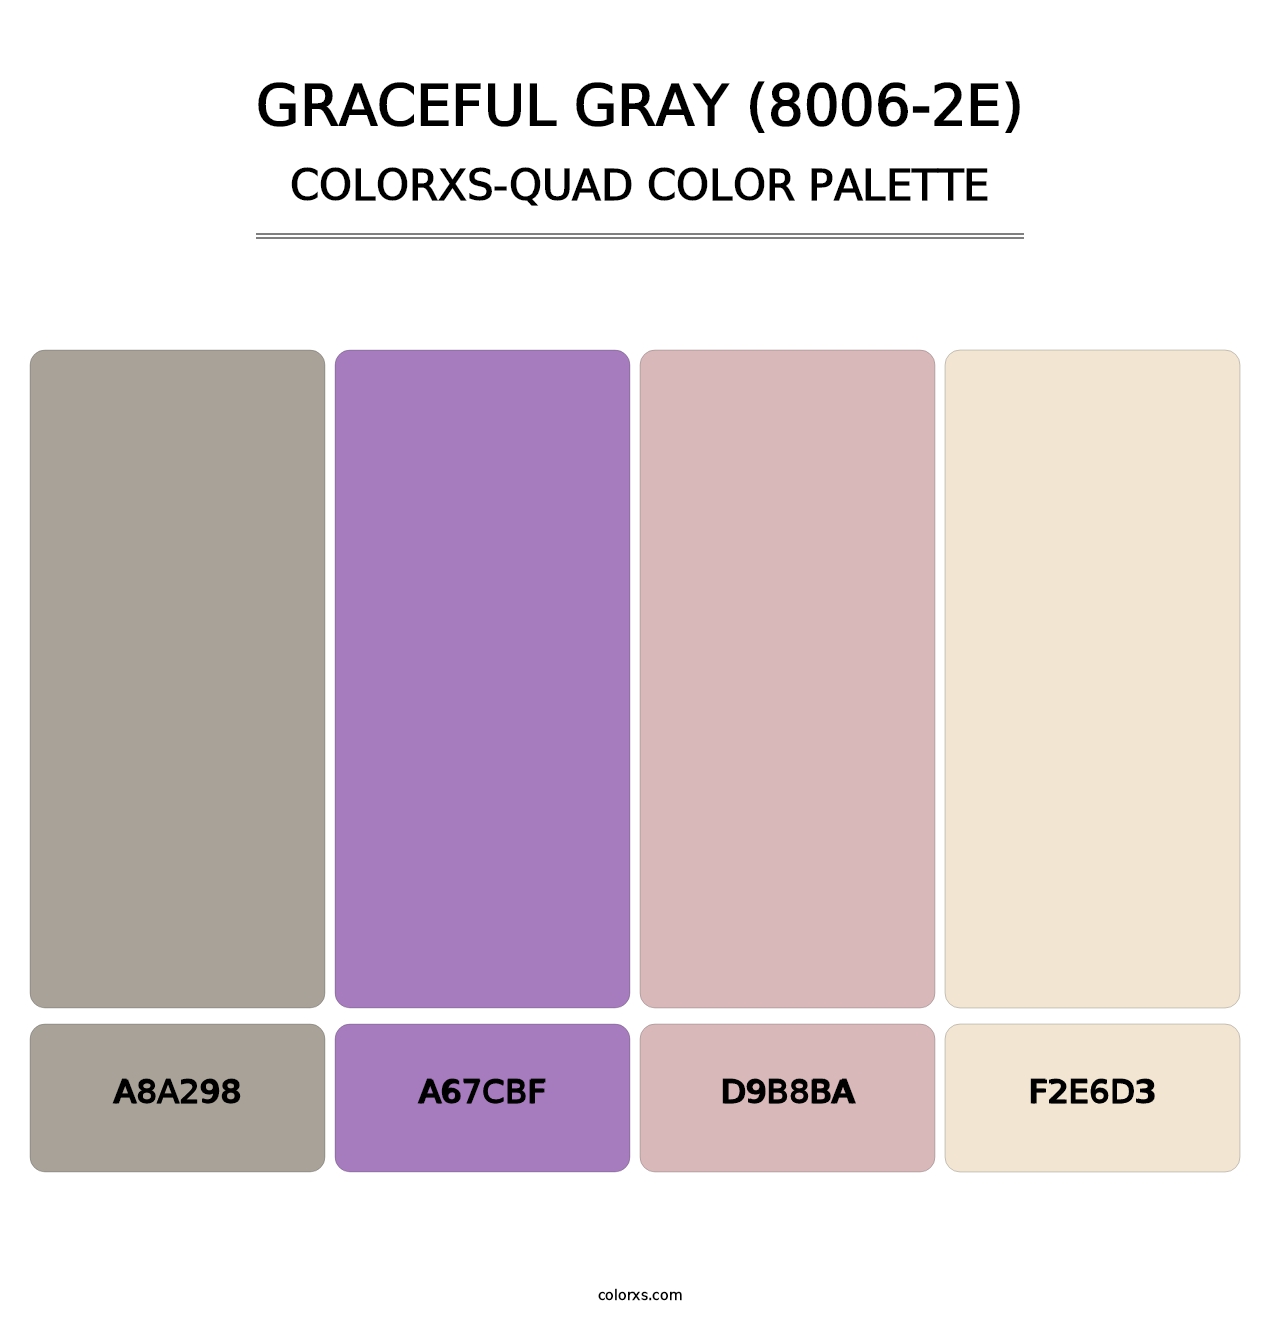 Graceful Gray (8006-2E) - Colorxs Quad Palette